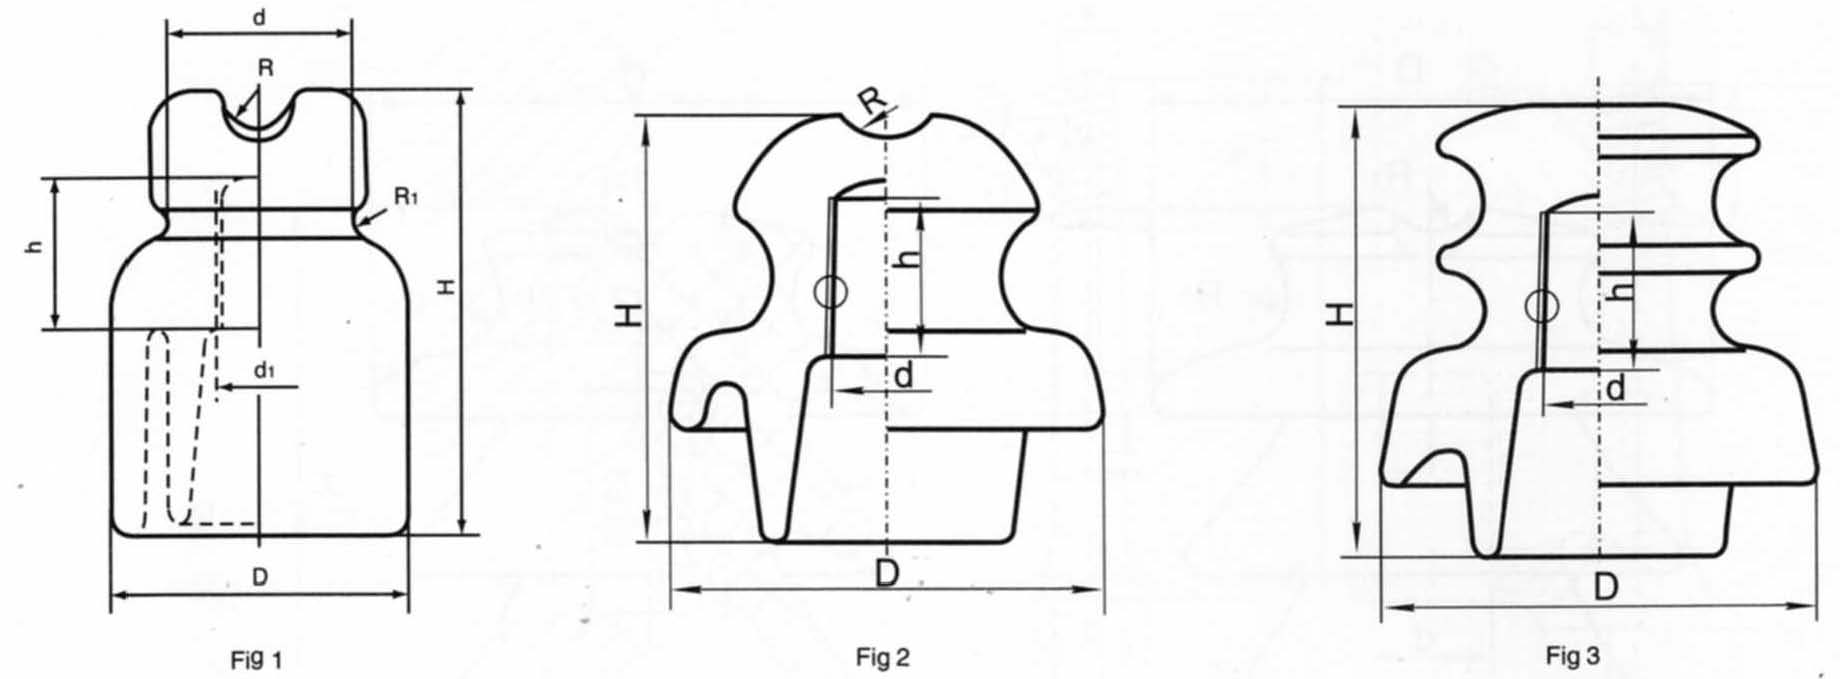 ကြေးနန်း insulator တွင်လည်းအပေါ်မှငှက်မြင်ကွင်းပါဝါလိုင်းများသက်ရောက်မှု insulator တွင်လည်း (N) တို့图片 3.png